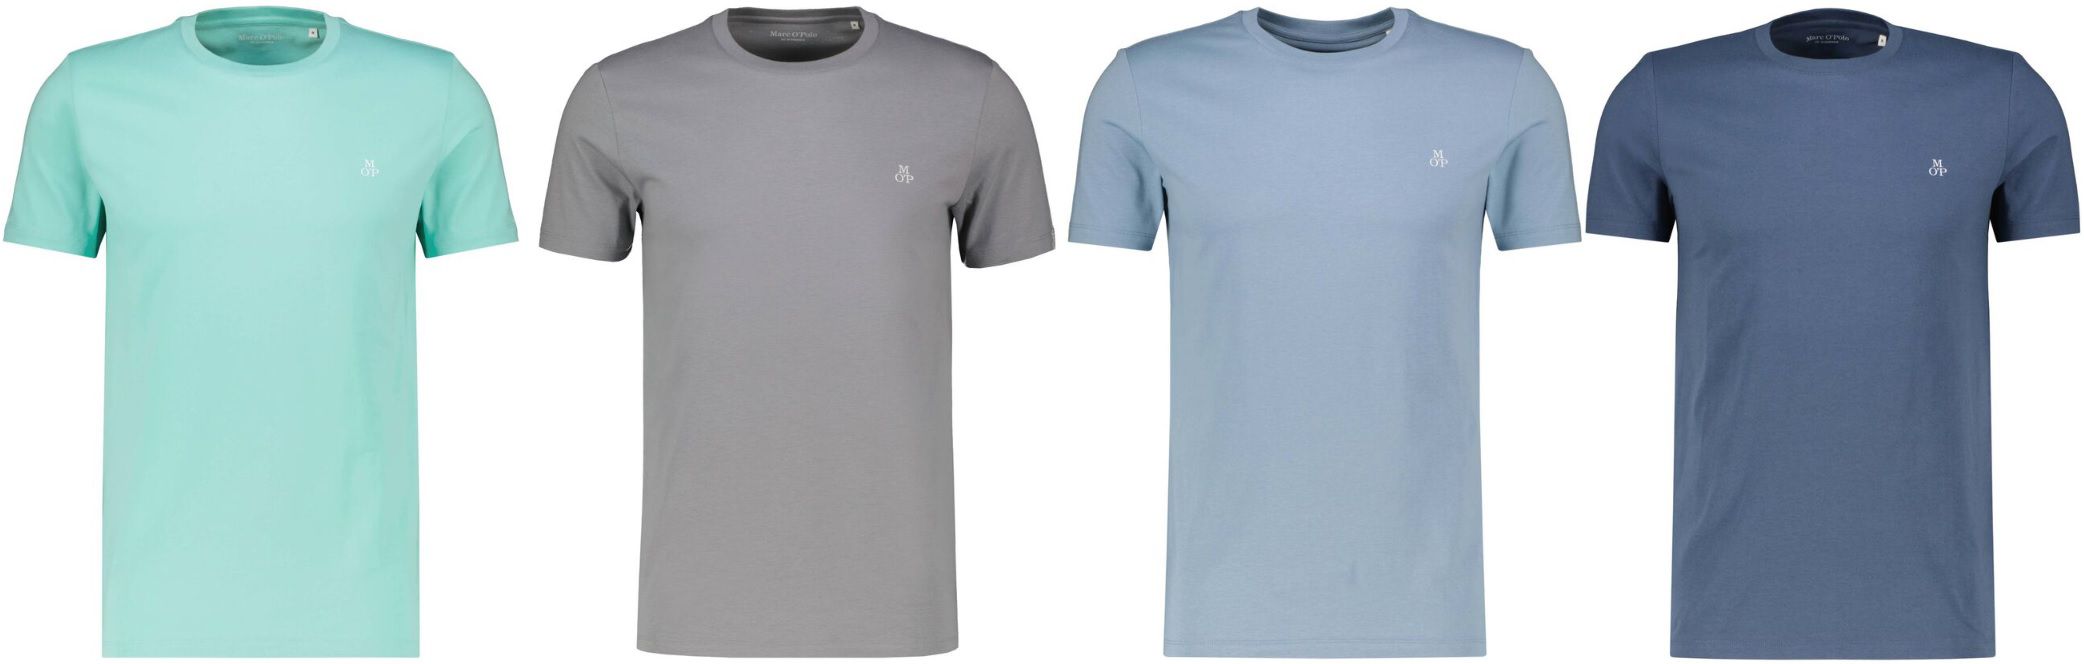 Marc OPolo Herren T Shirt   mehrere Farben für 15,54€ (statt 24€)